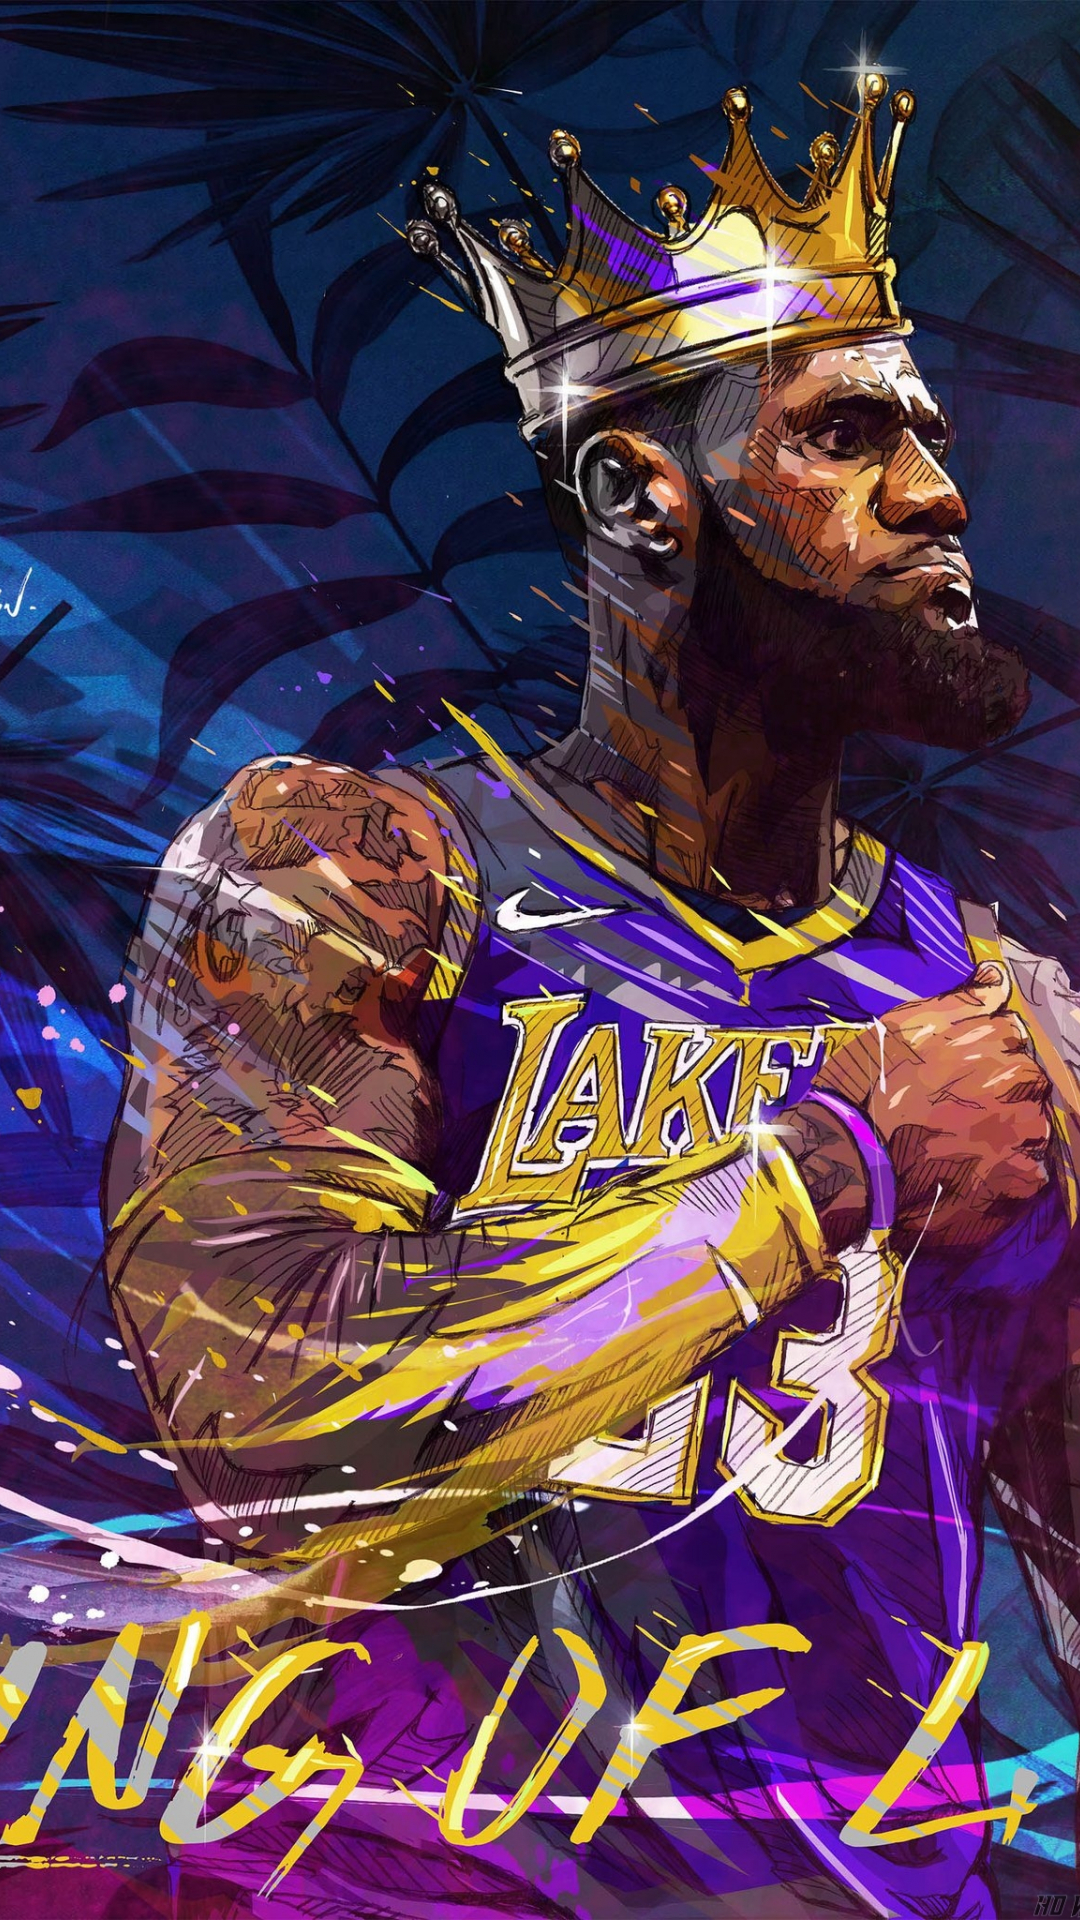 Lakers Wallpaper 1